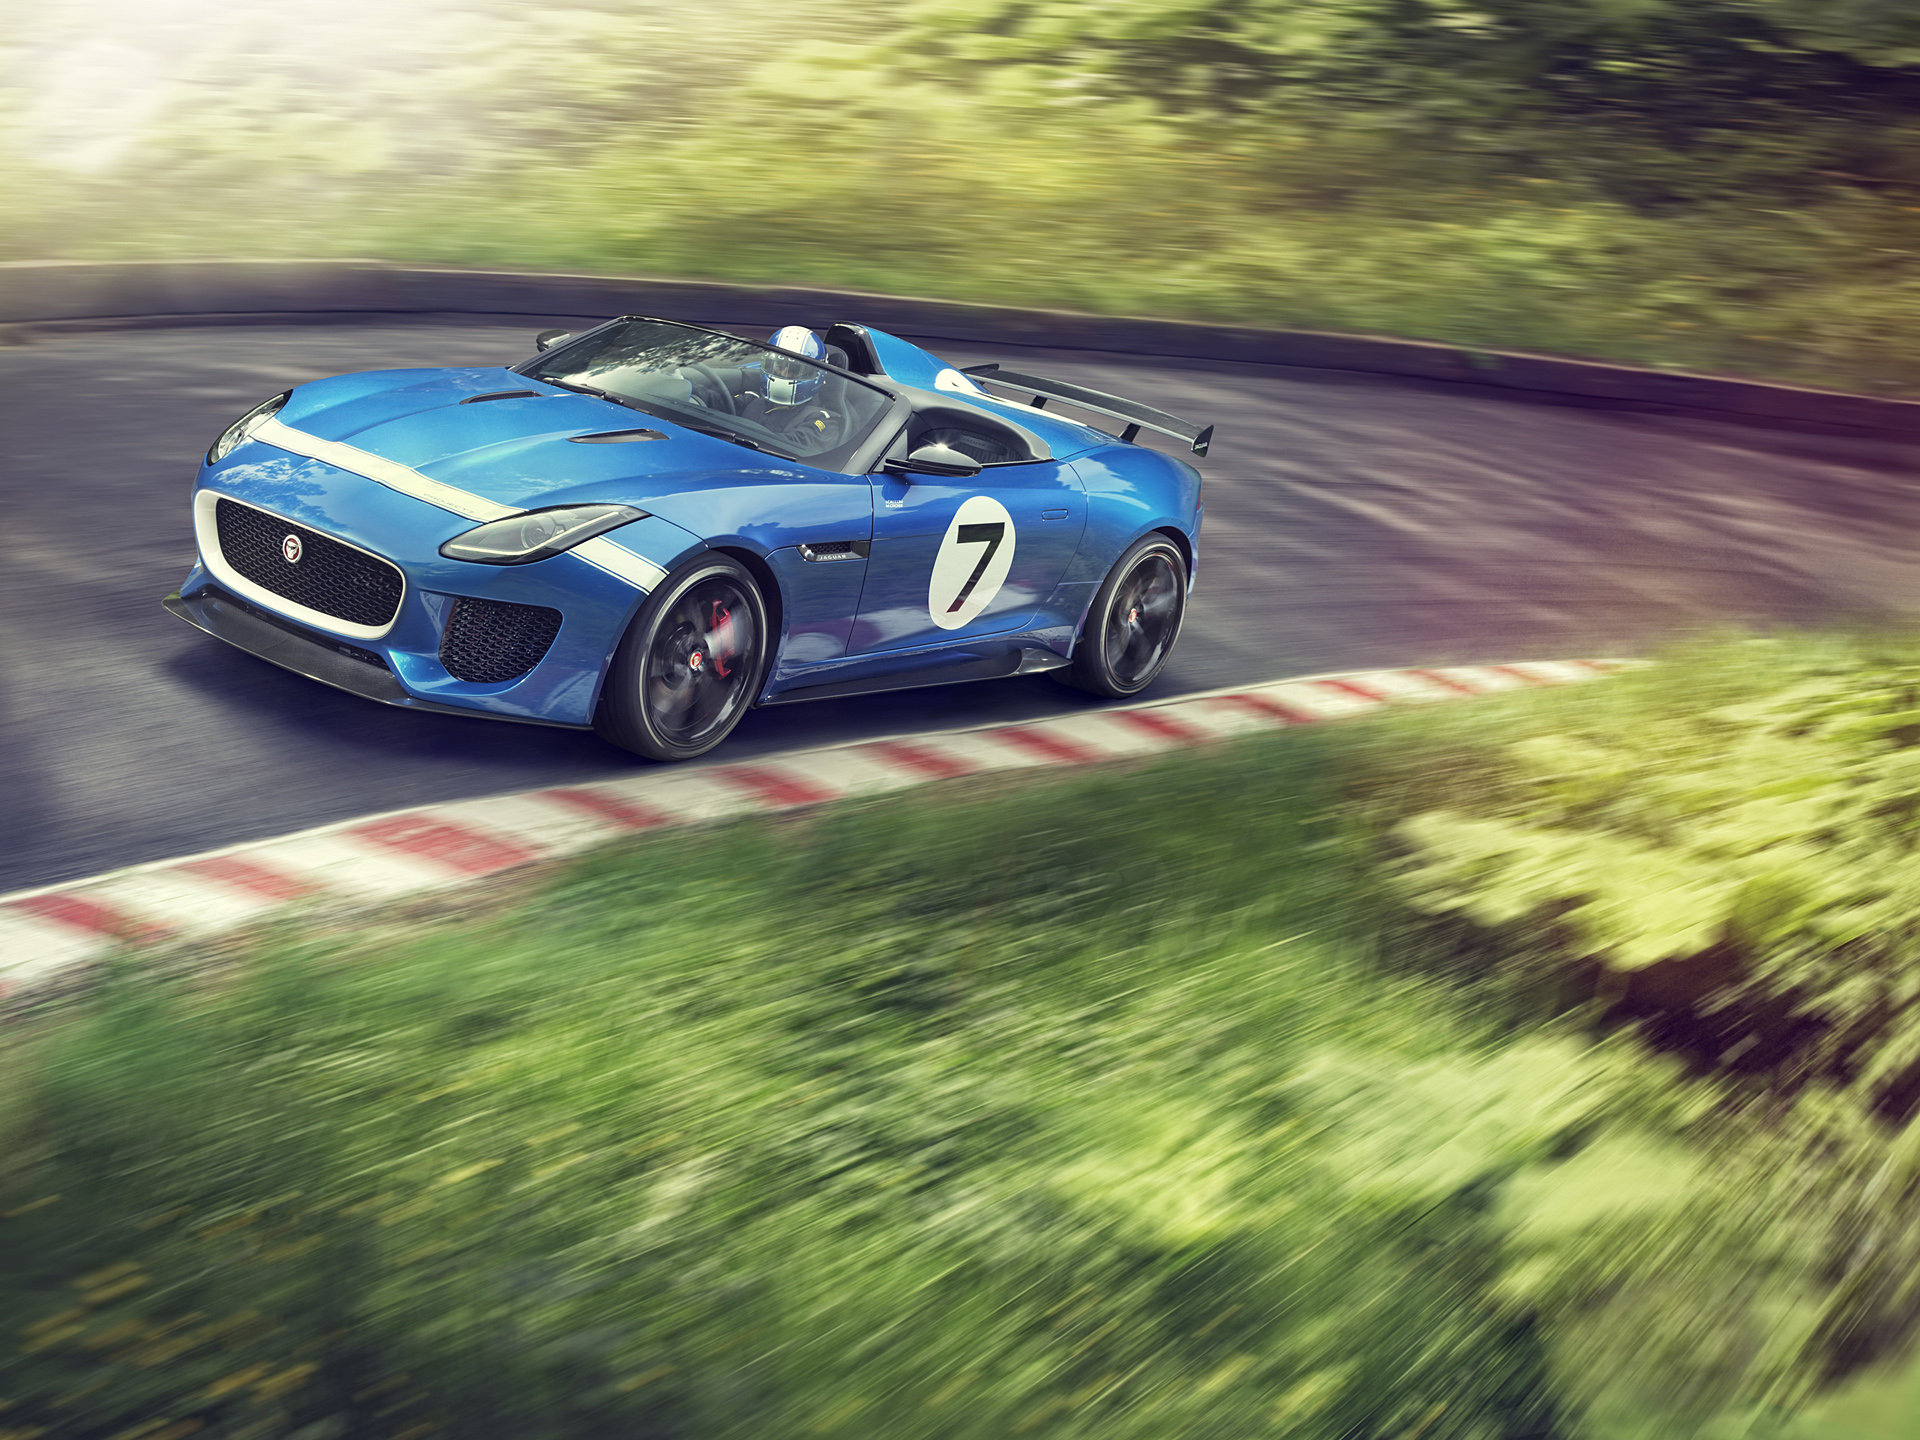  2013 Jaguar Project 7 Concept Wallpaper.